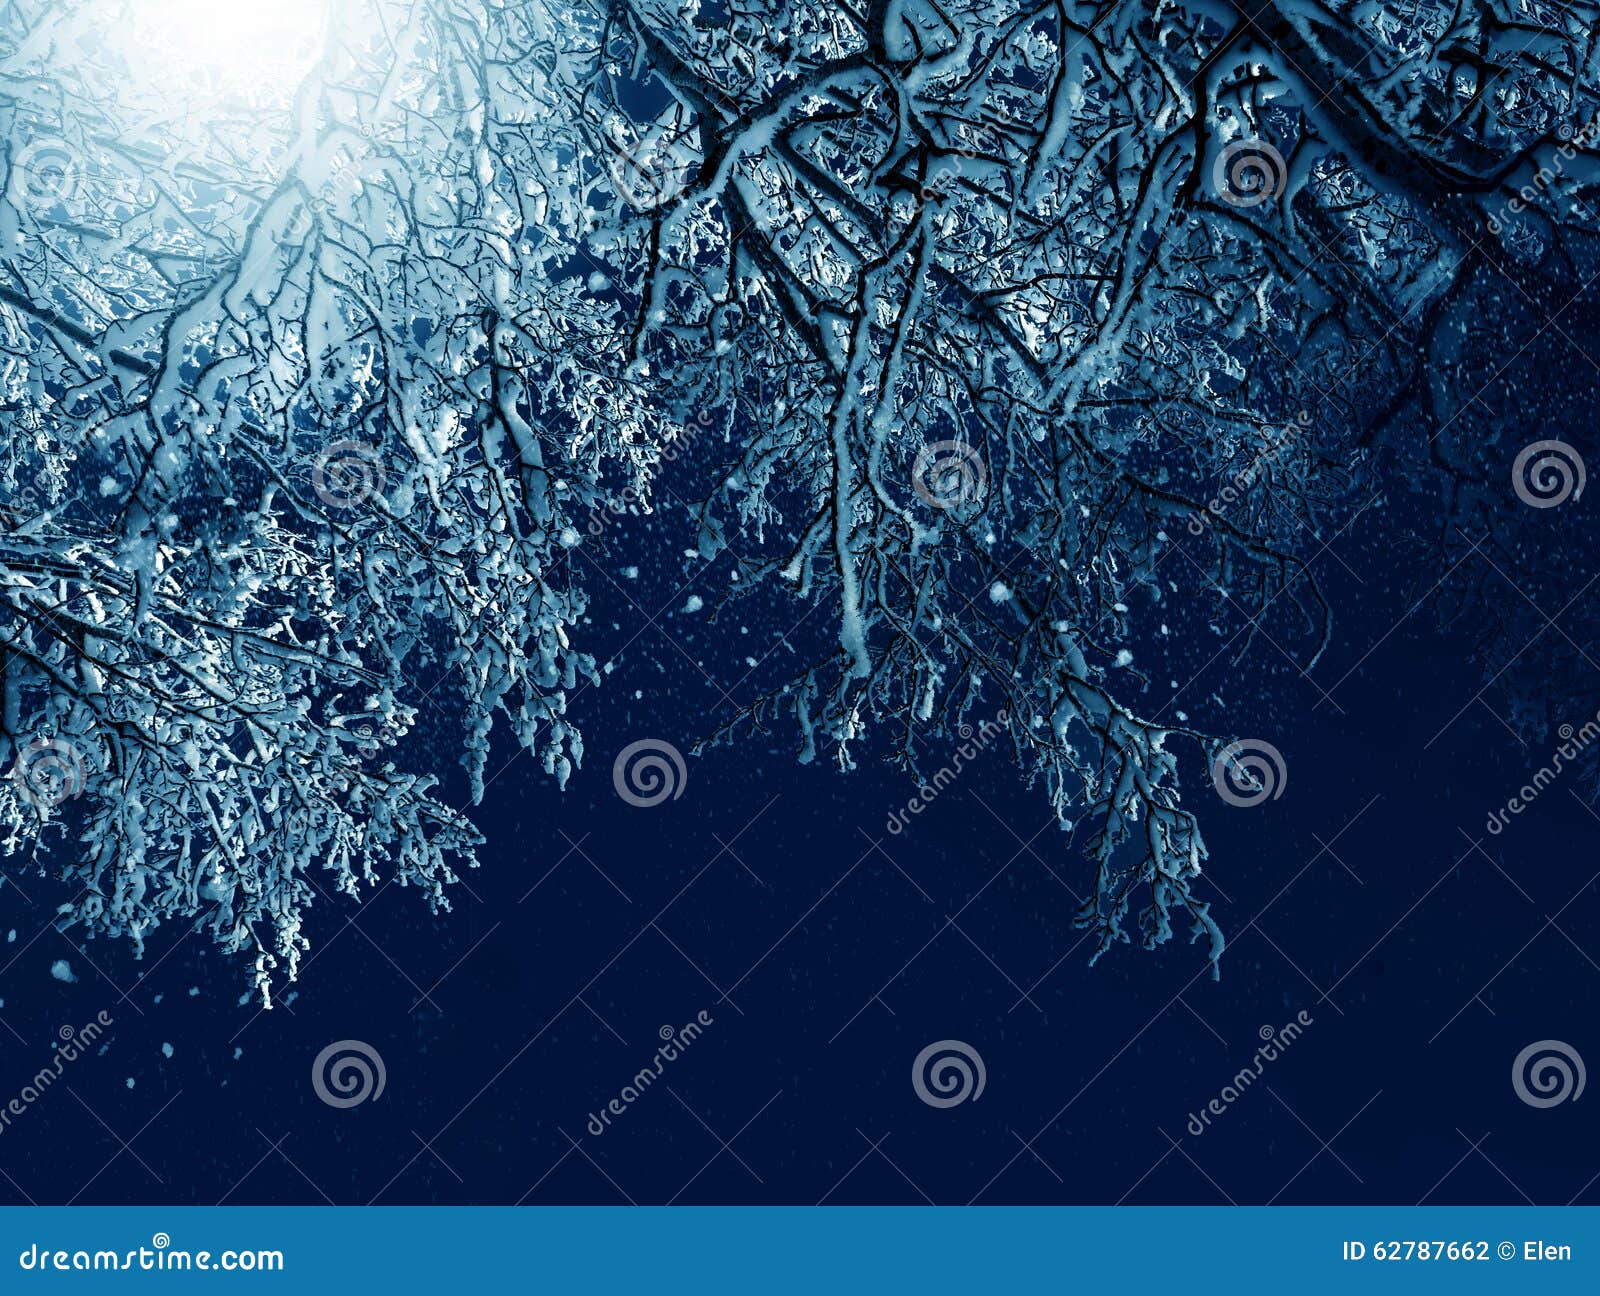 Winterlandschaft, eisige Bäume im Mondschein. Winterlandschaft, Nacht, eisige Bäume in einer Stadt parken im Mondschein